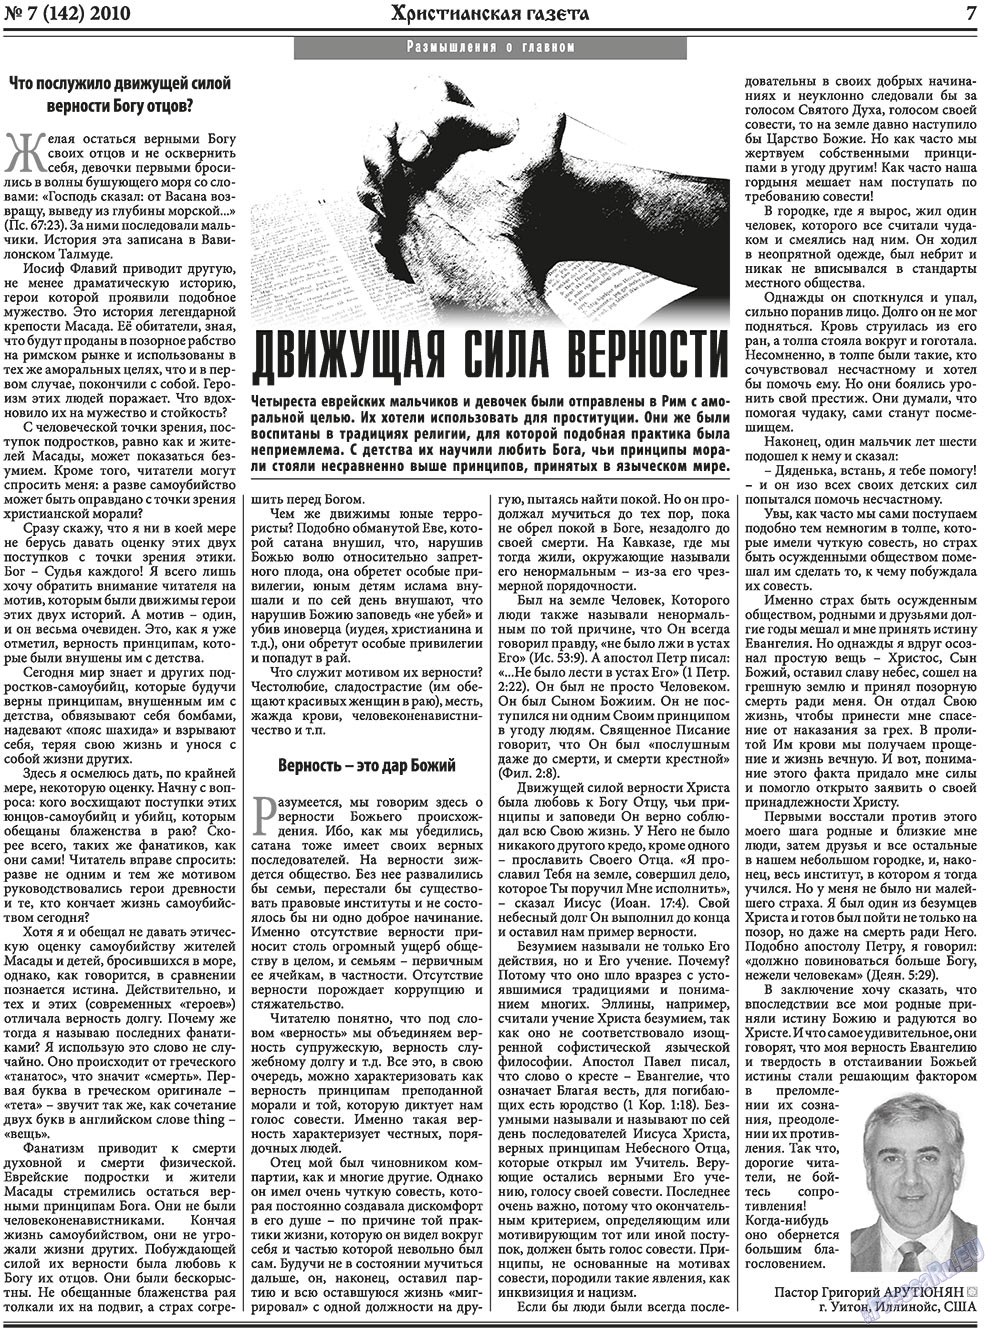 Христианская газета, газета. 2010 №7 стр.7